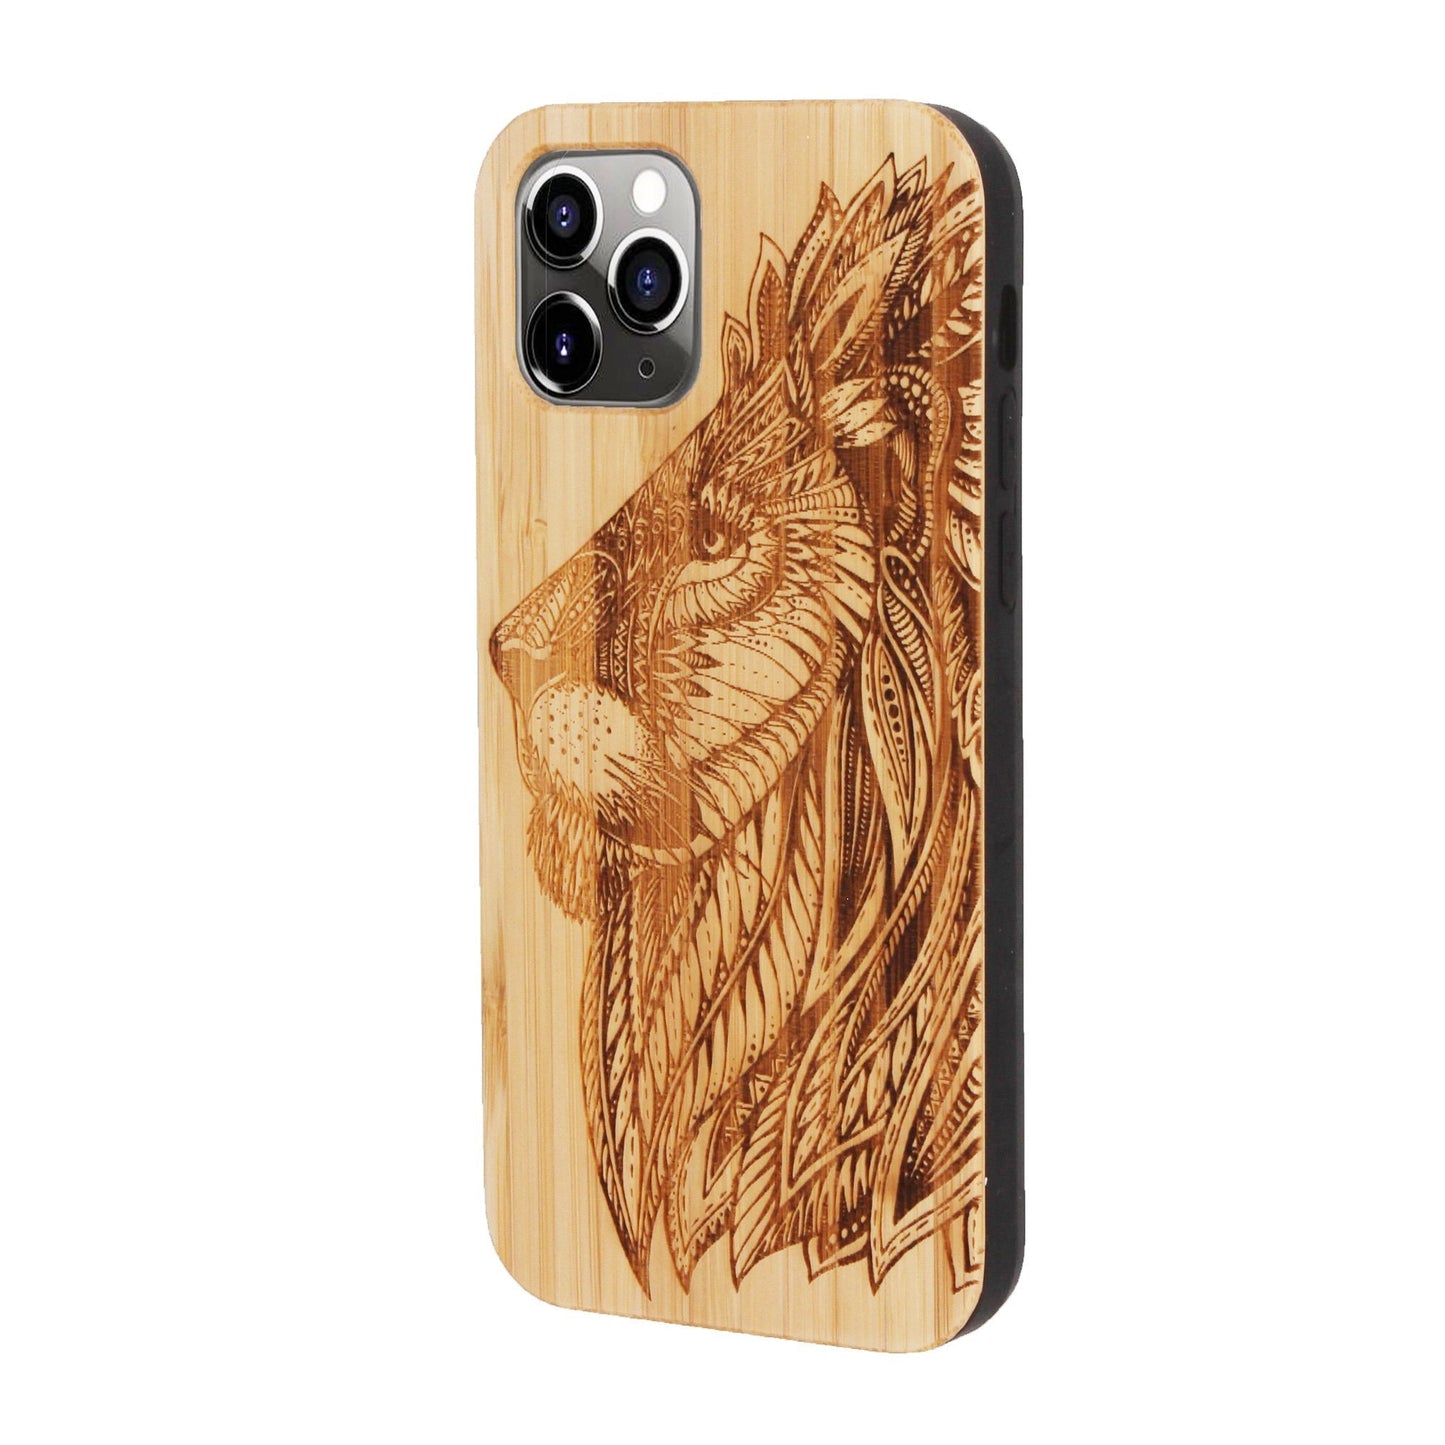 Coque Eden lion en bambou pour iPhone 11 Pro Max